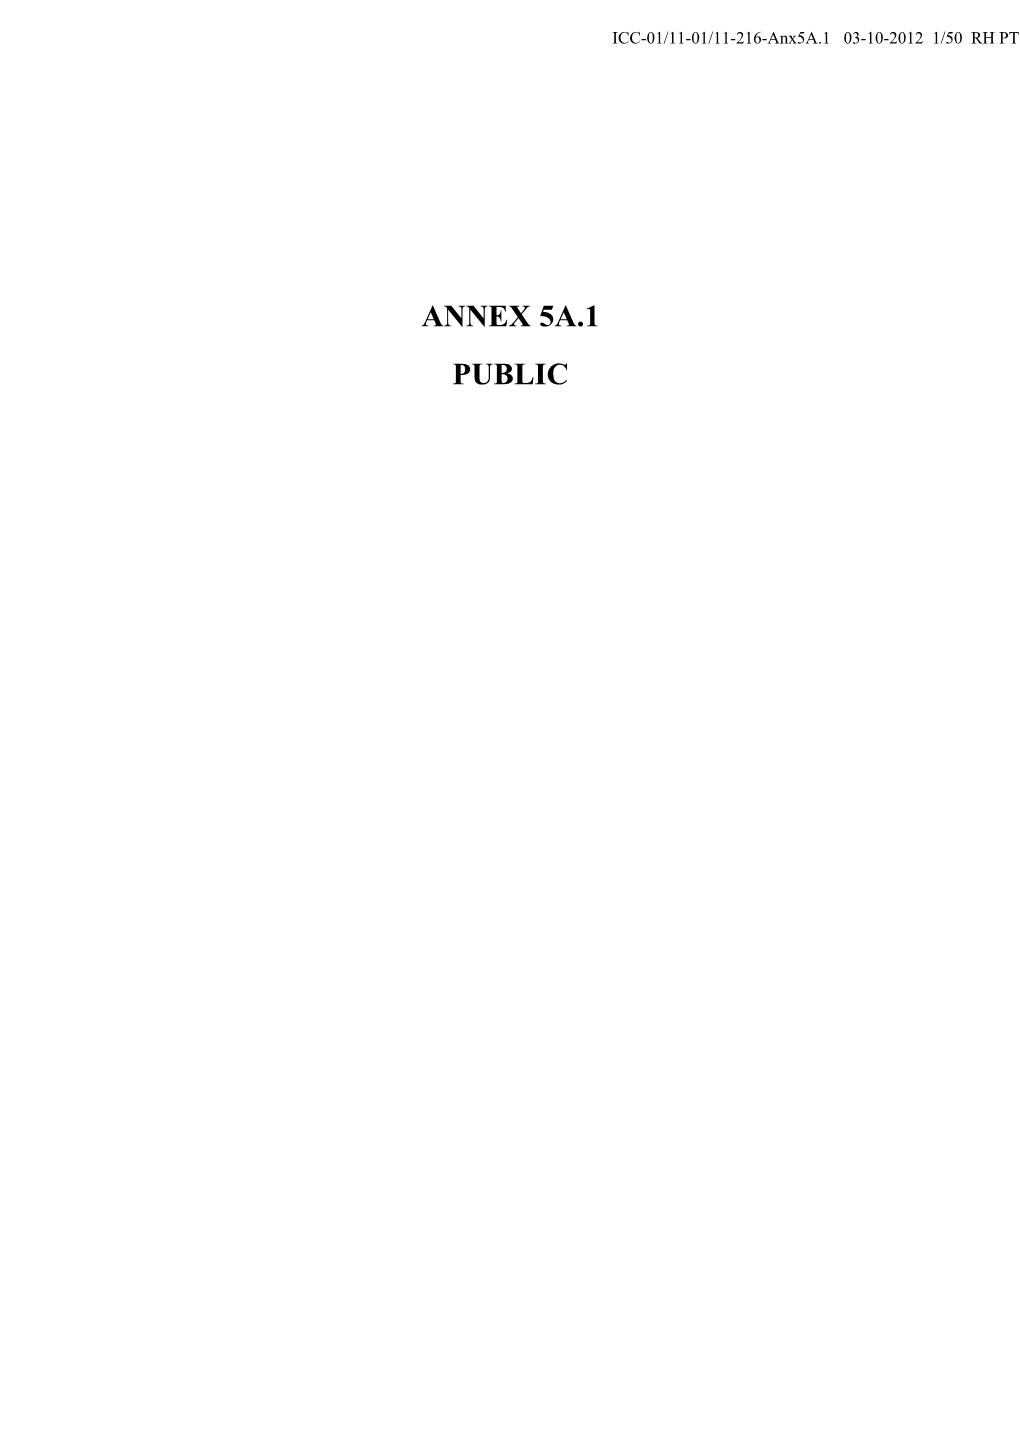 ANNEX 5A.1 PUBLIC ICC-01/11-01/11-216-Anx5a.1 03-10-2012 2/50 RH PT